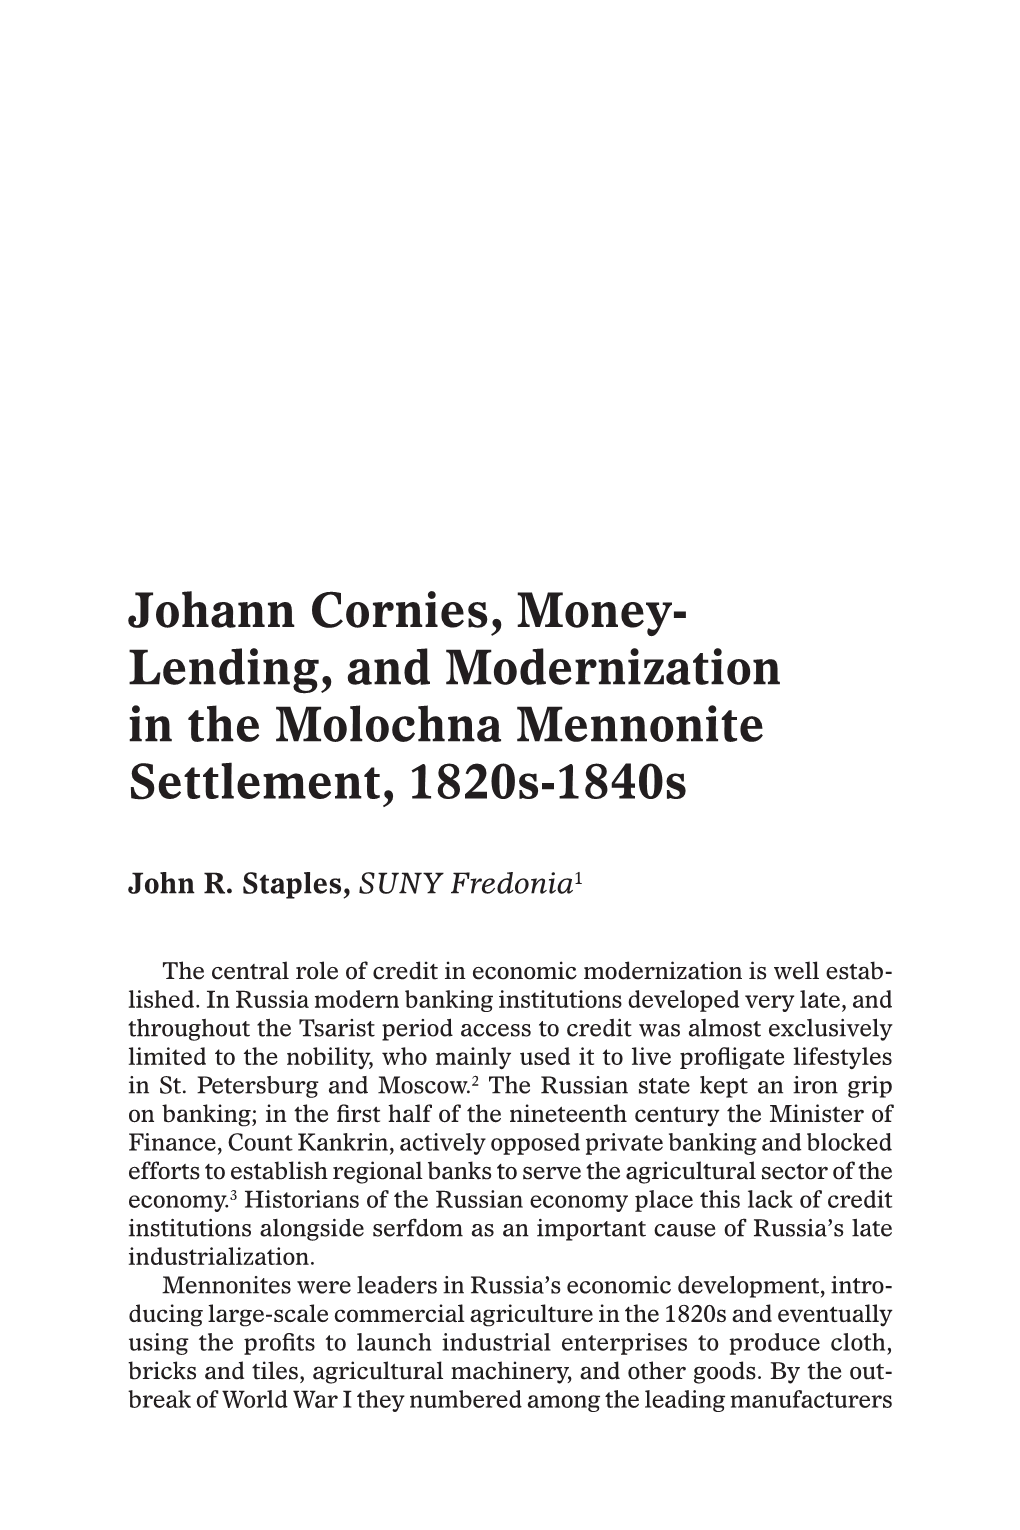 Johann Cornies, Money- Lending, and Modernization in the Molochna Mennonite Settlement, 1820S-1840S